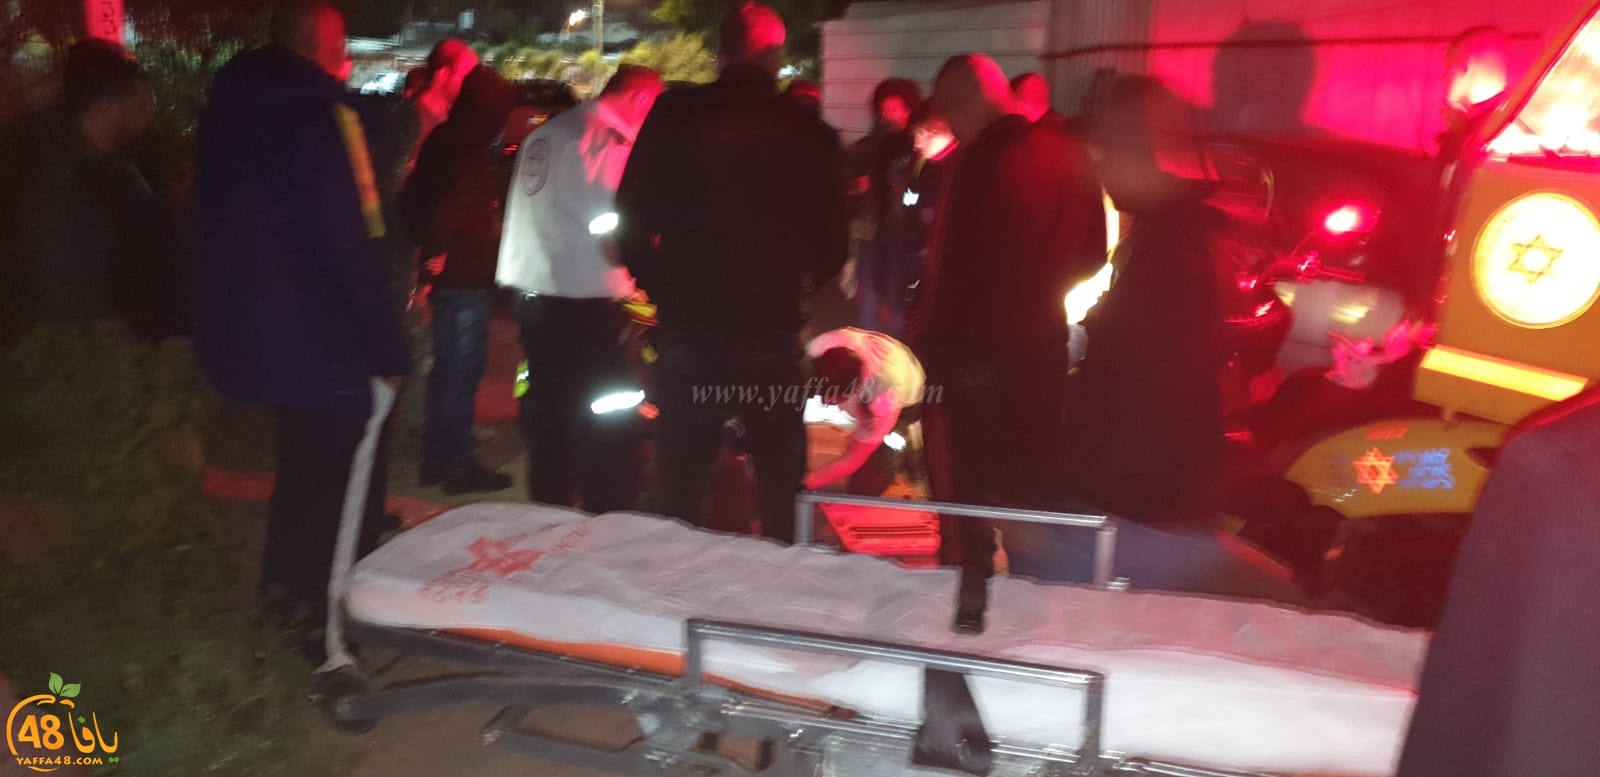  اللد: اصابة خطرة لمواطن اثر تعرضه لحادث دهس بالمدينة